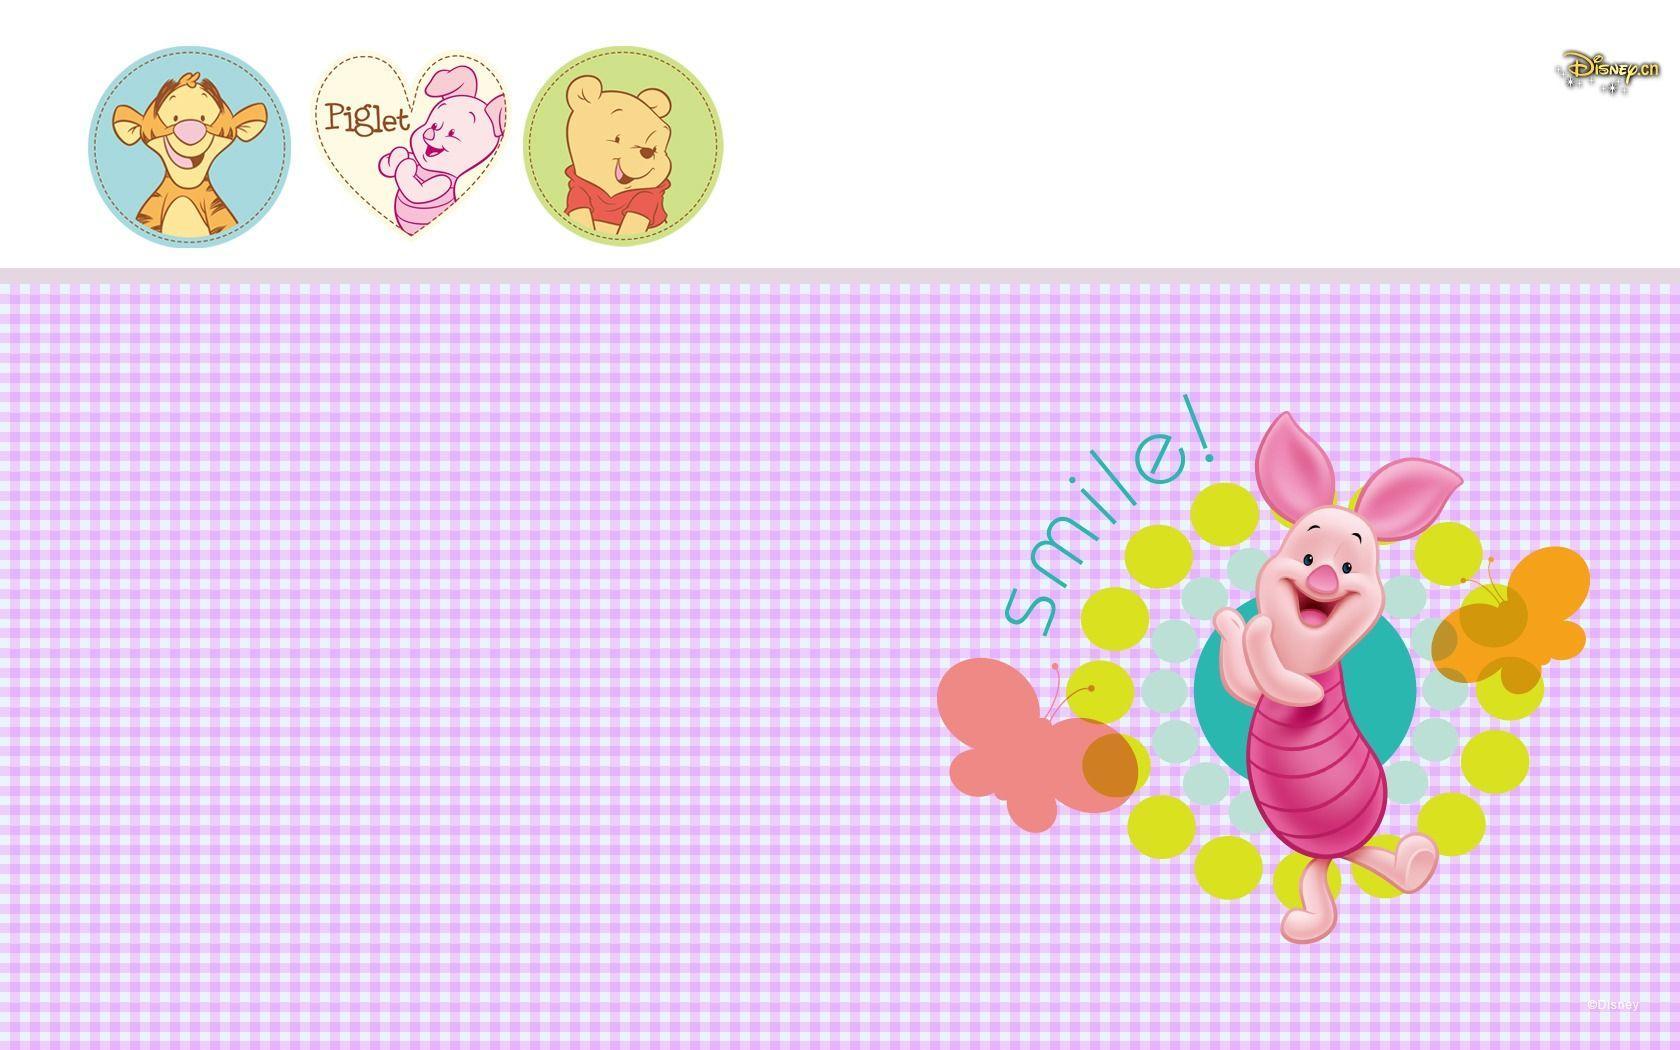 Pooh HD Wallpaper Piglet 300x187 Winnie The Pooh HD Wallpaper